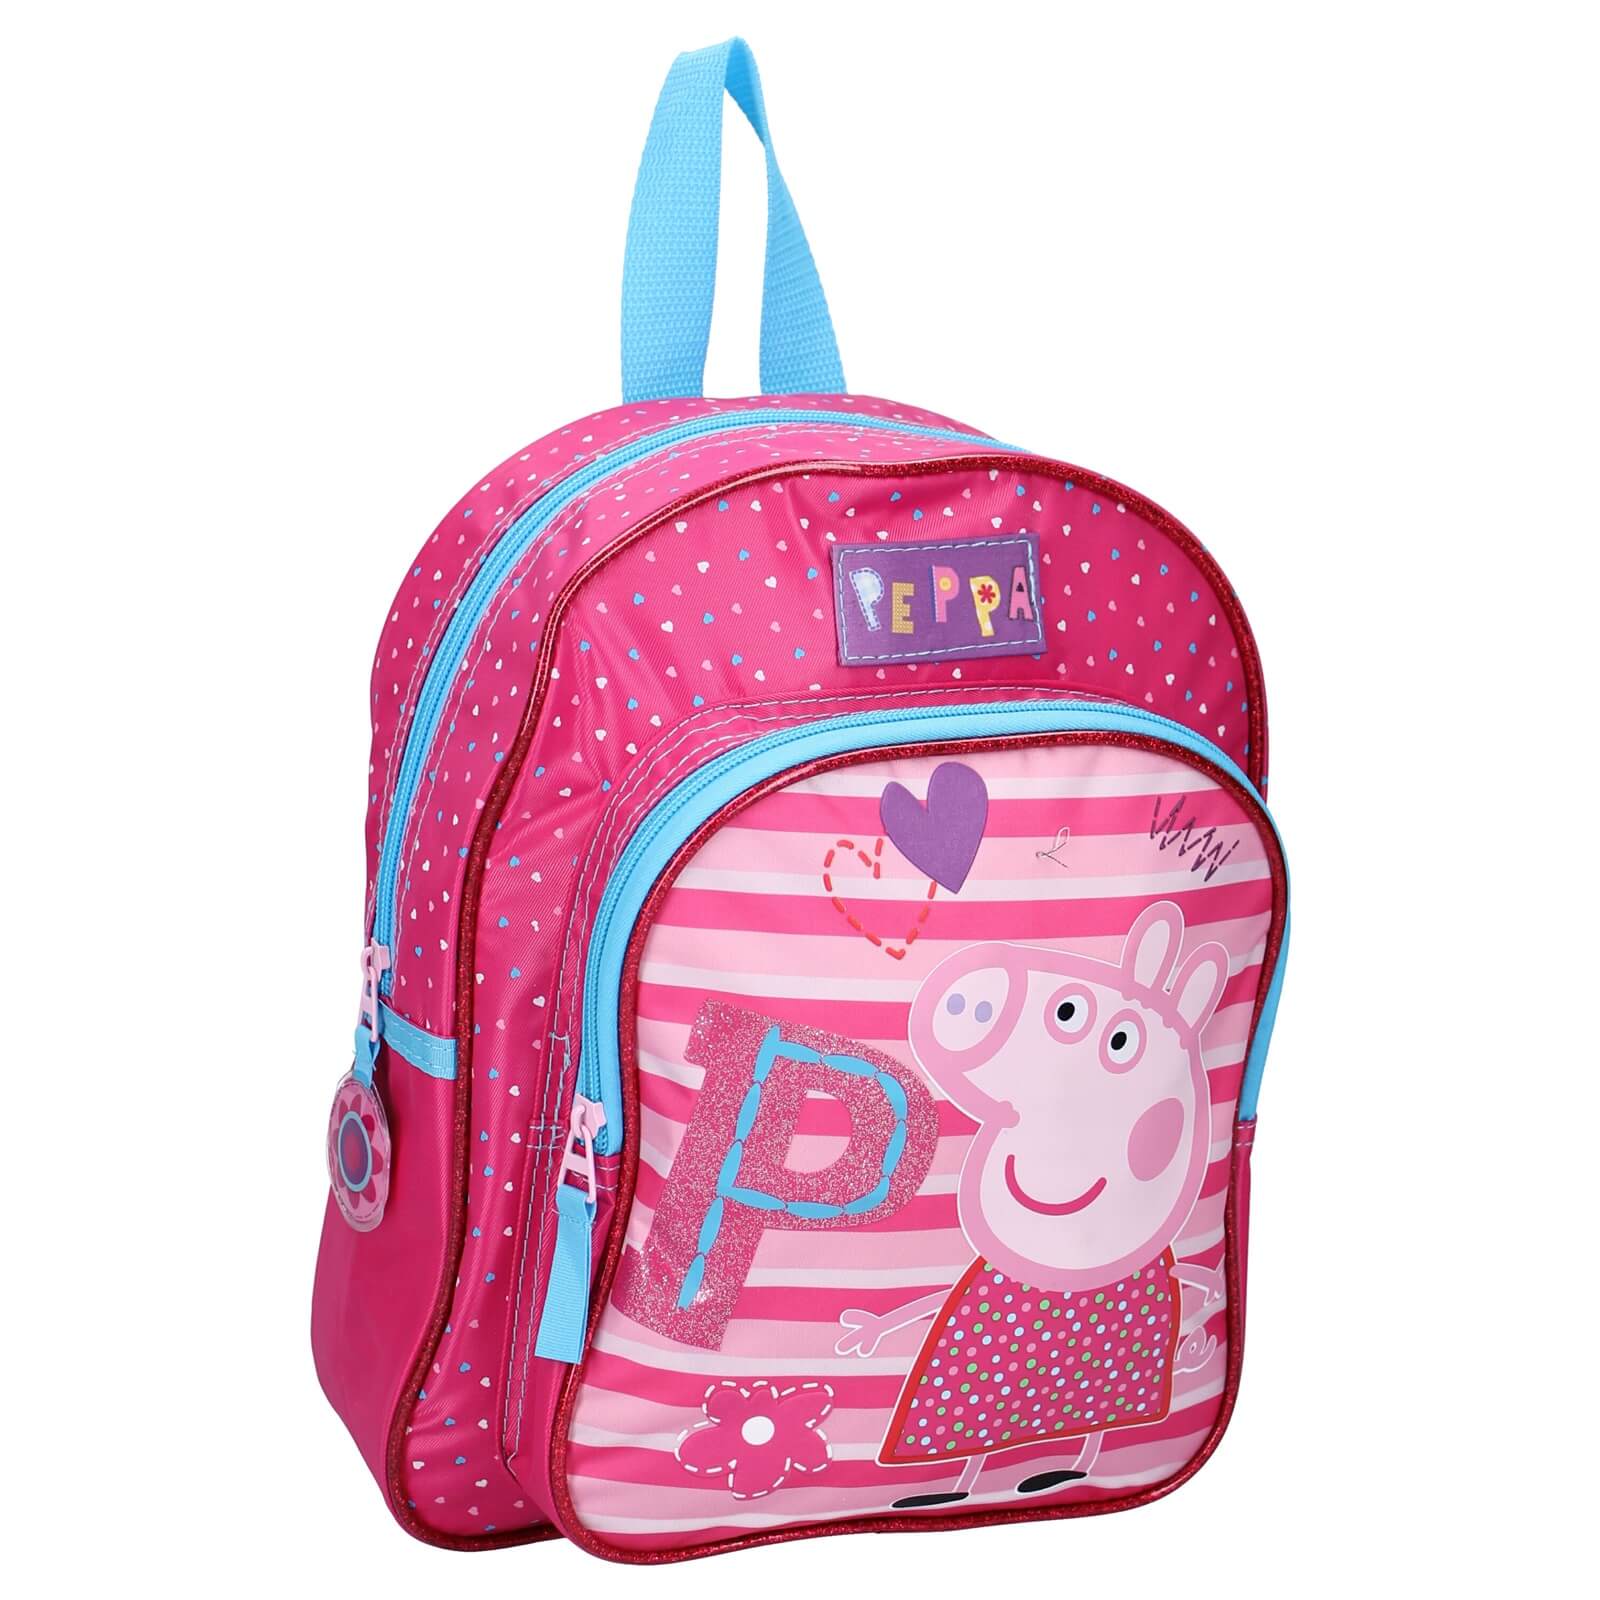 Kinder Schulter Tasche Bag Sport Kindergarten Feizeit Peppa Pig Wutz Schwein 